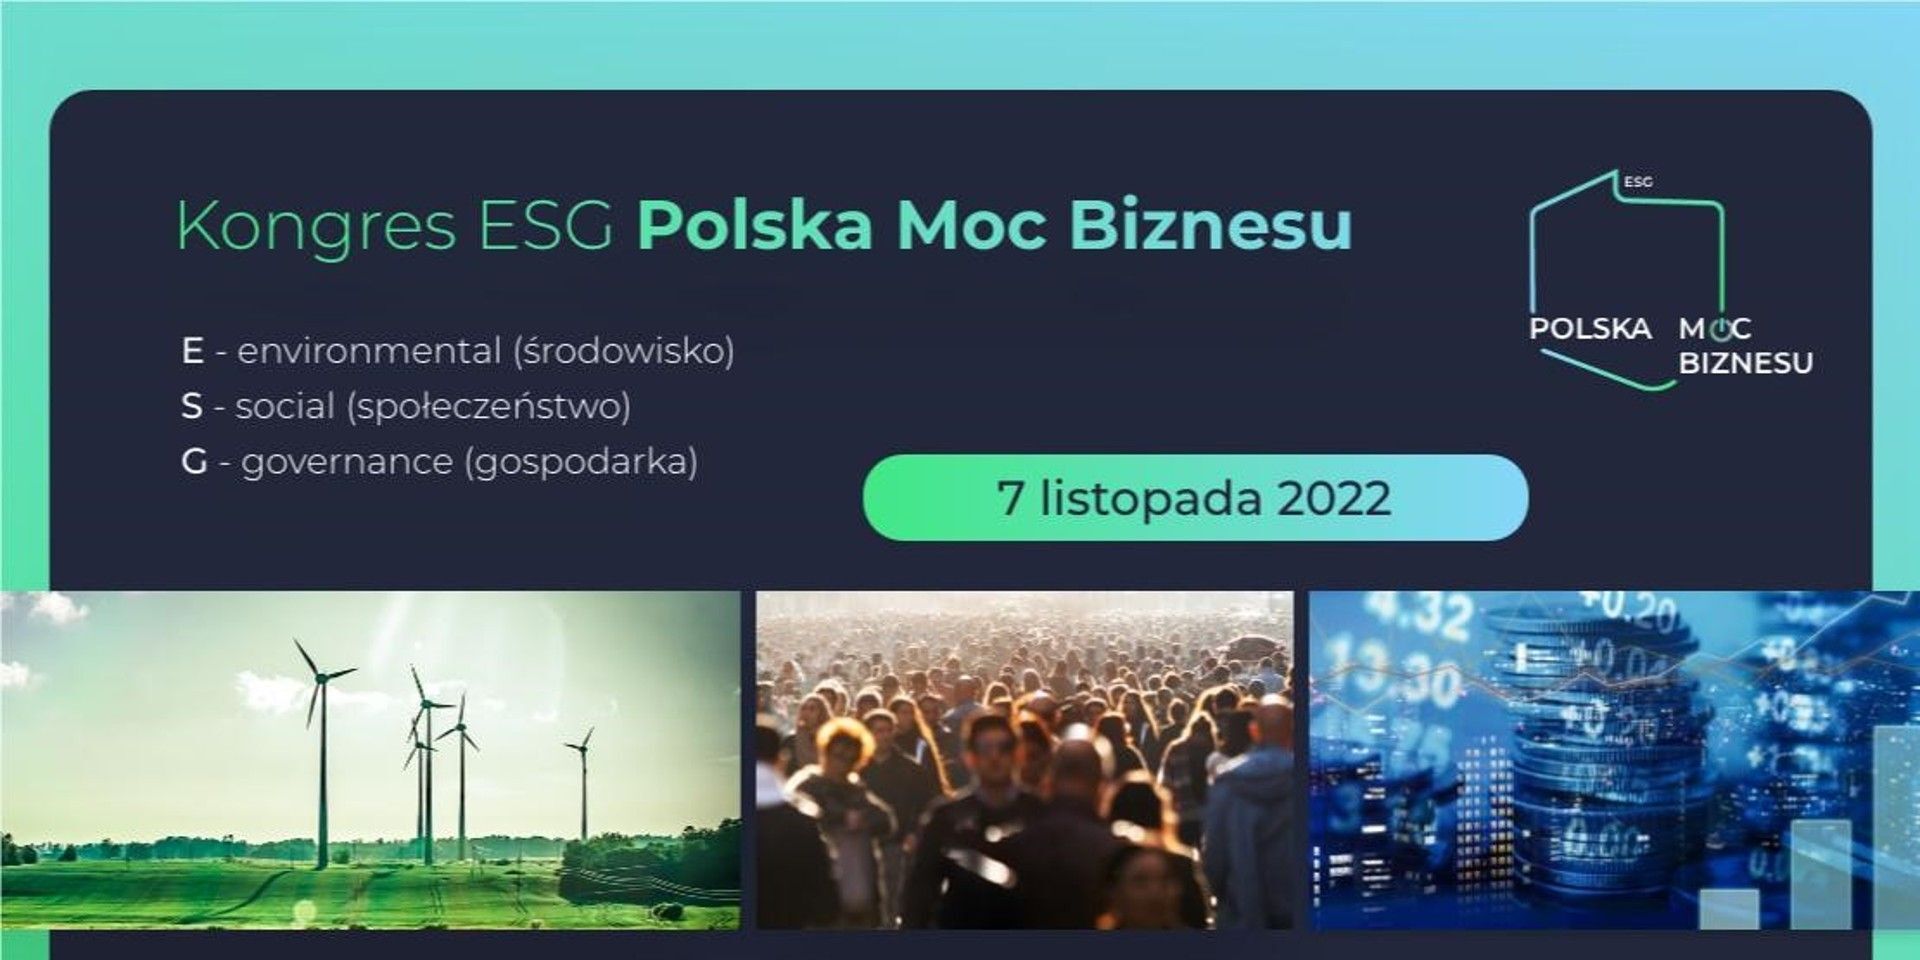 Kancelaria HANTON partnerem merytorycznym Kongresu ESG Polska Moc Biznesu 2022! 